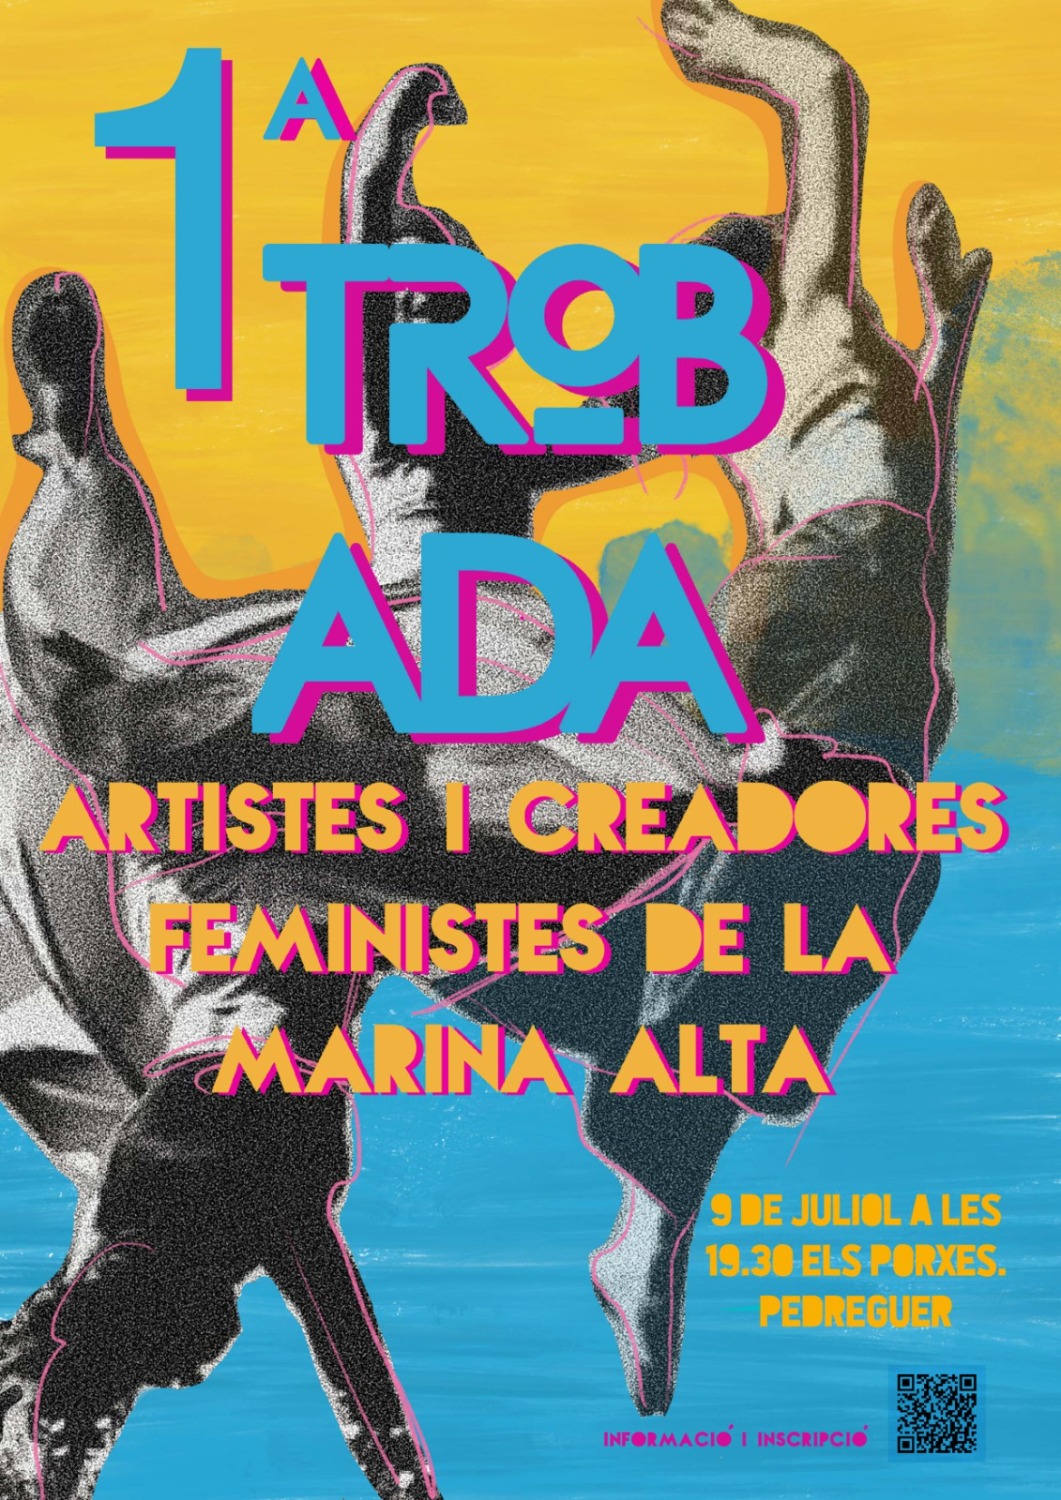 El viernes día 9 de julio se celebra en Pedreguer el 1º Encuentro de mujeres artistas y feministas de la Marina Alta